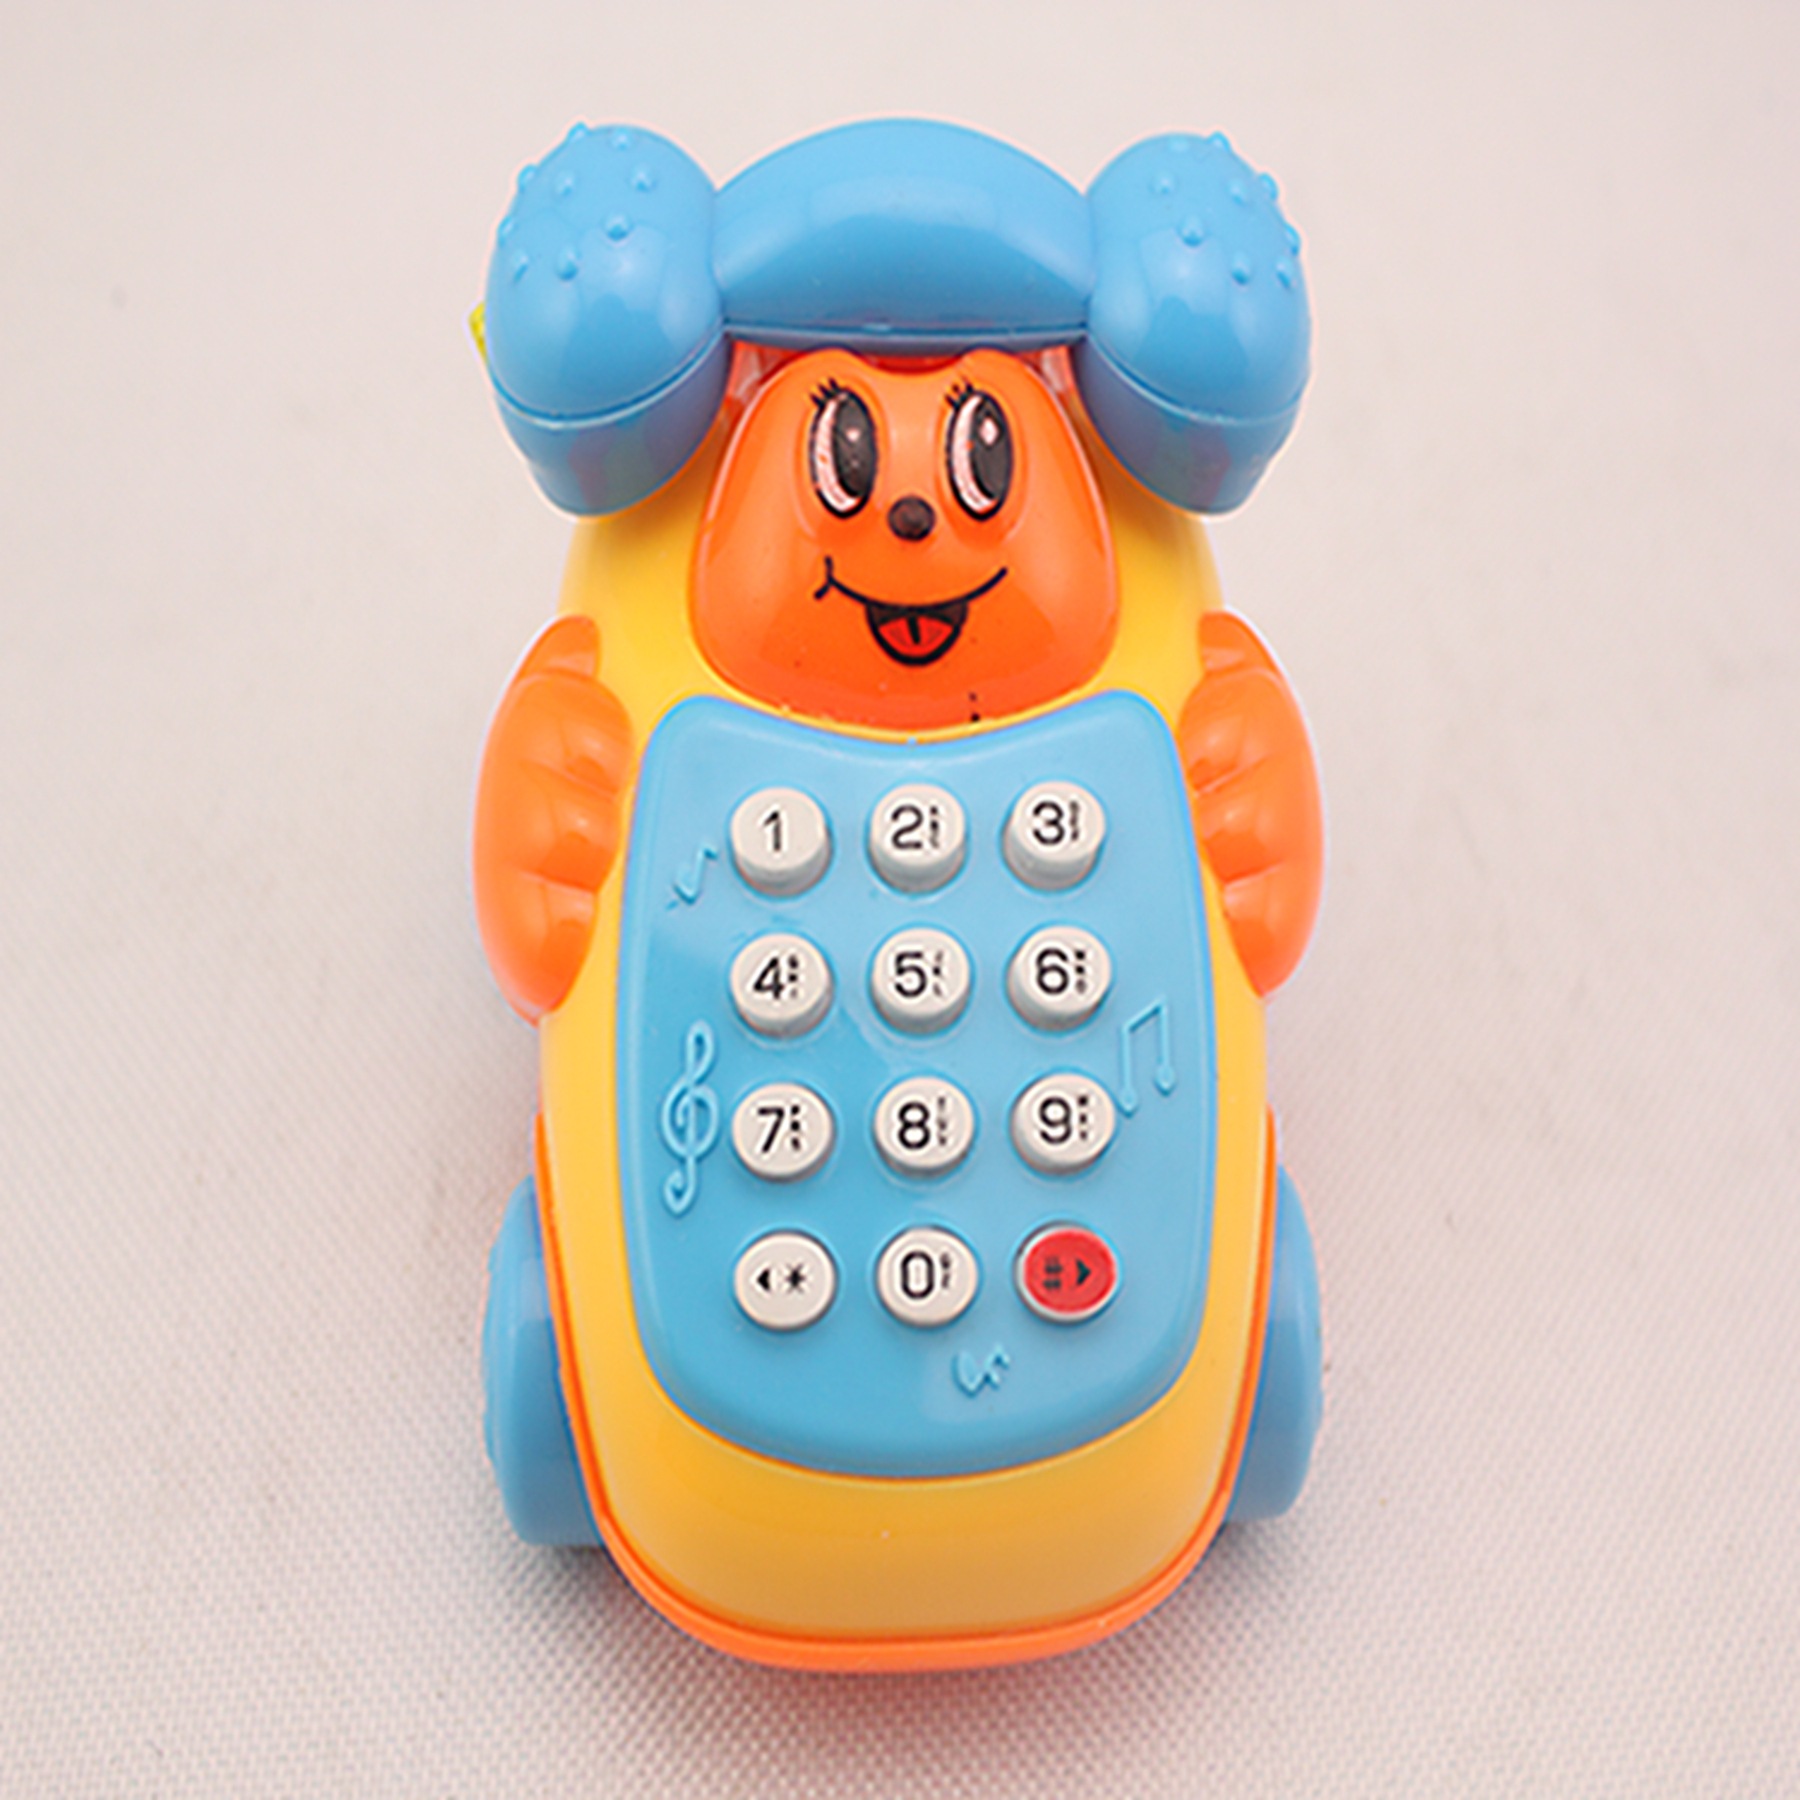 热销玩具 音乐电话机 卡通电话机 热销多彩儿童电话机产品批发